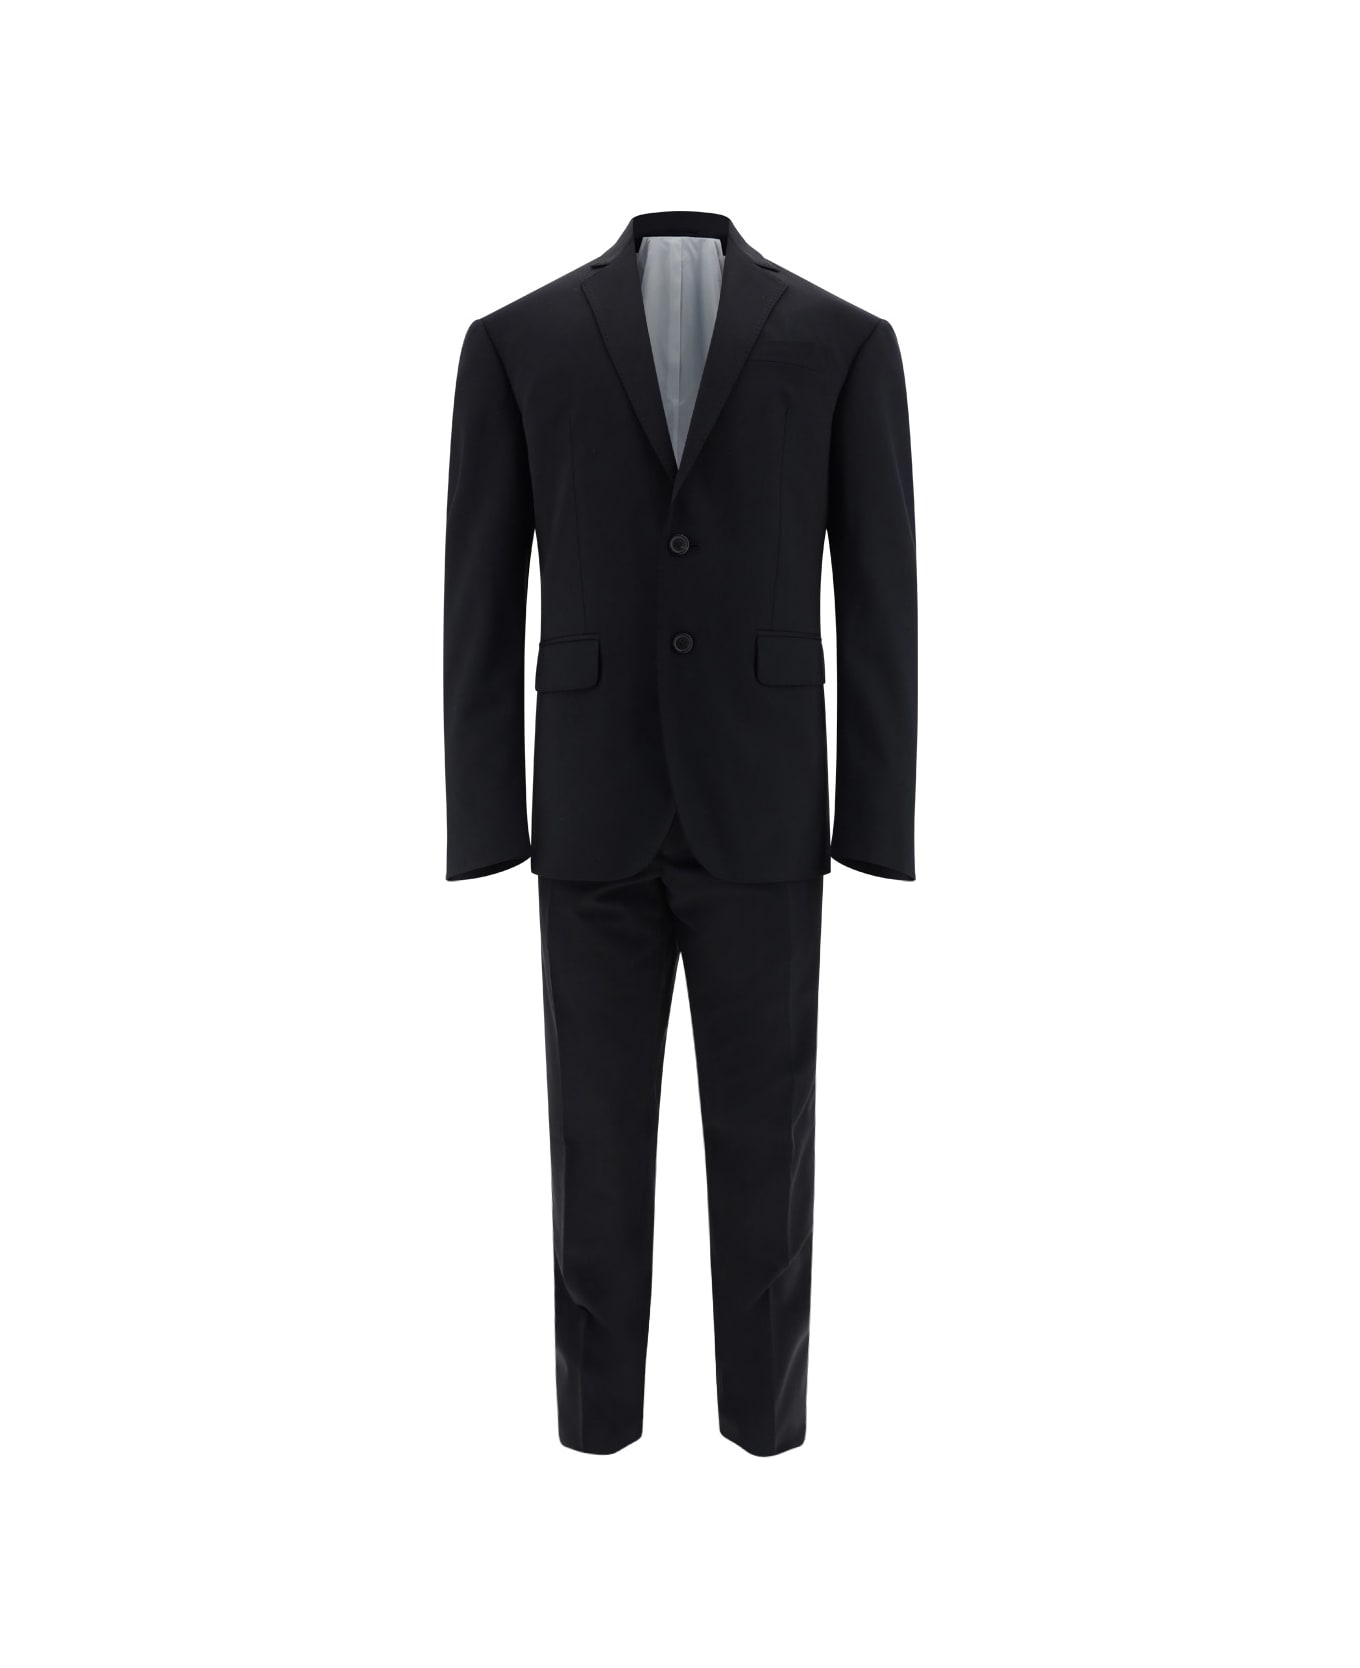 Dsquared2 Paris Suit Two-piece Suit - 900 スーツ